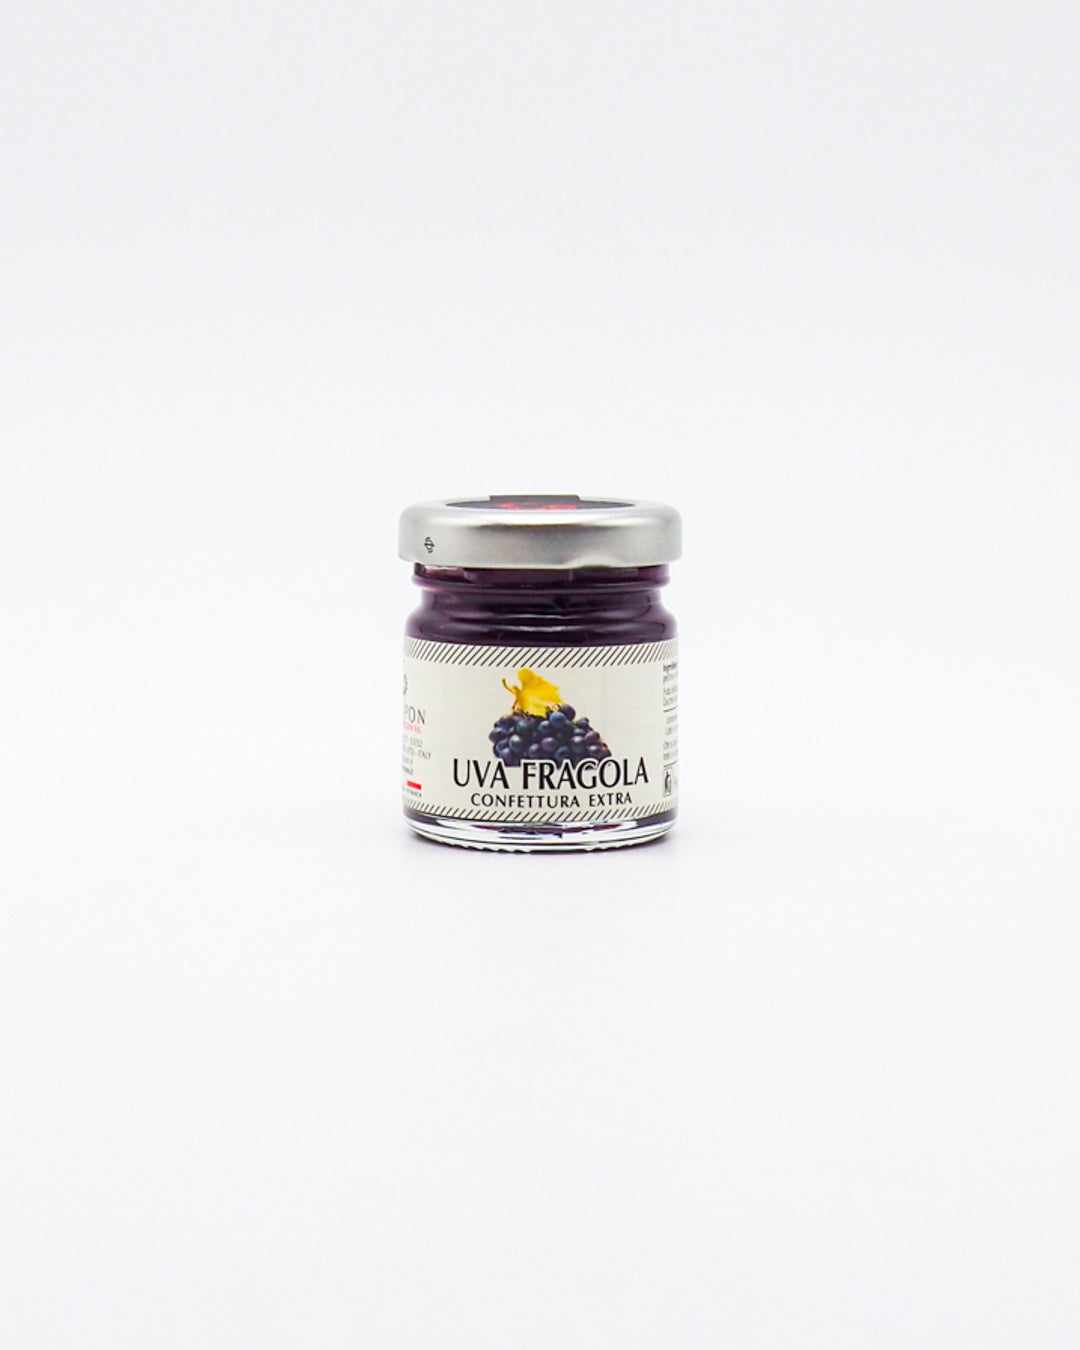 Confettura Extra di Uva Fragola - Azienda Agricola Scarpon